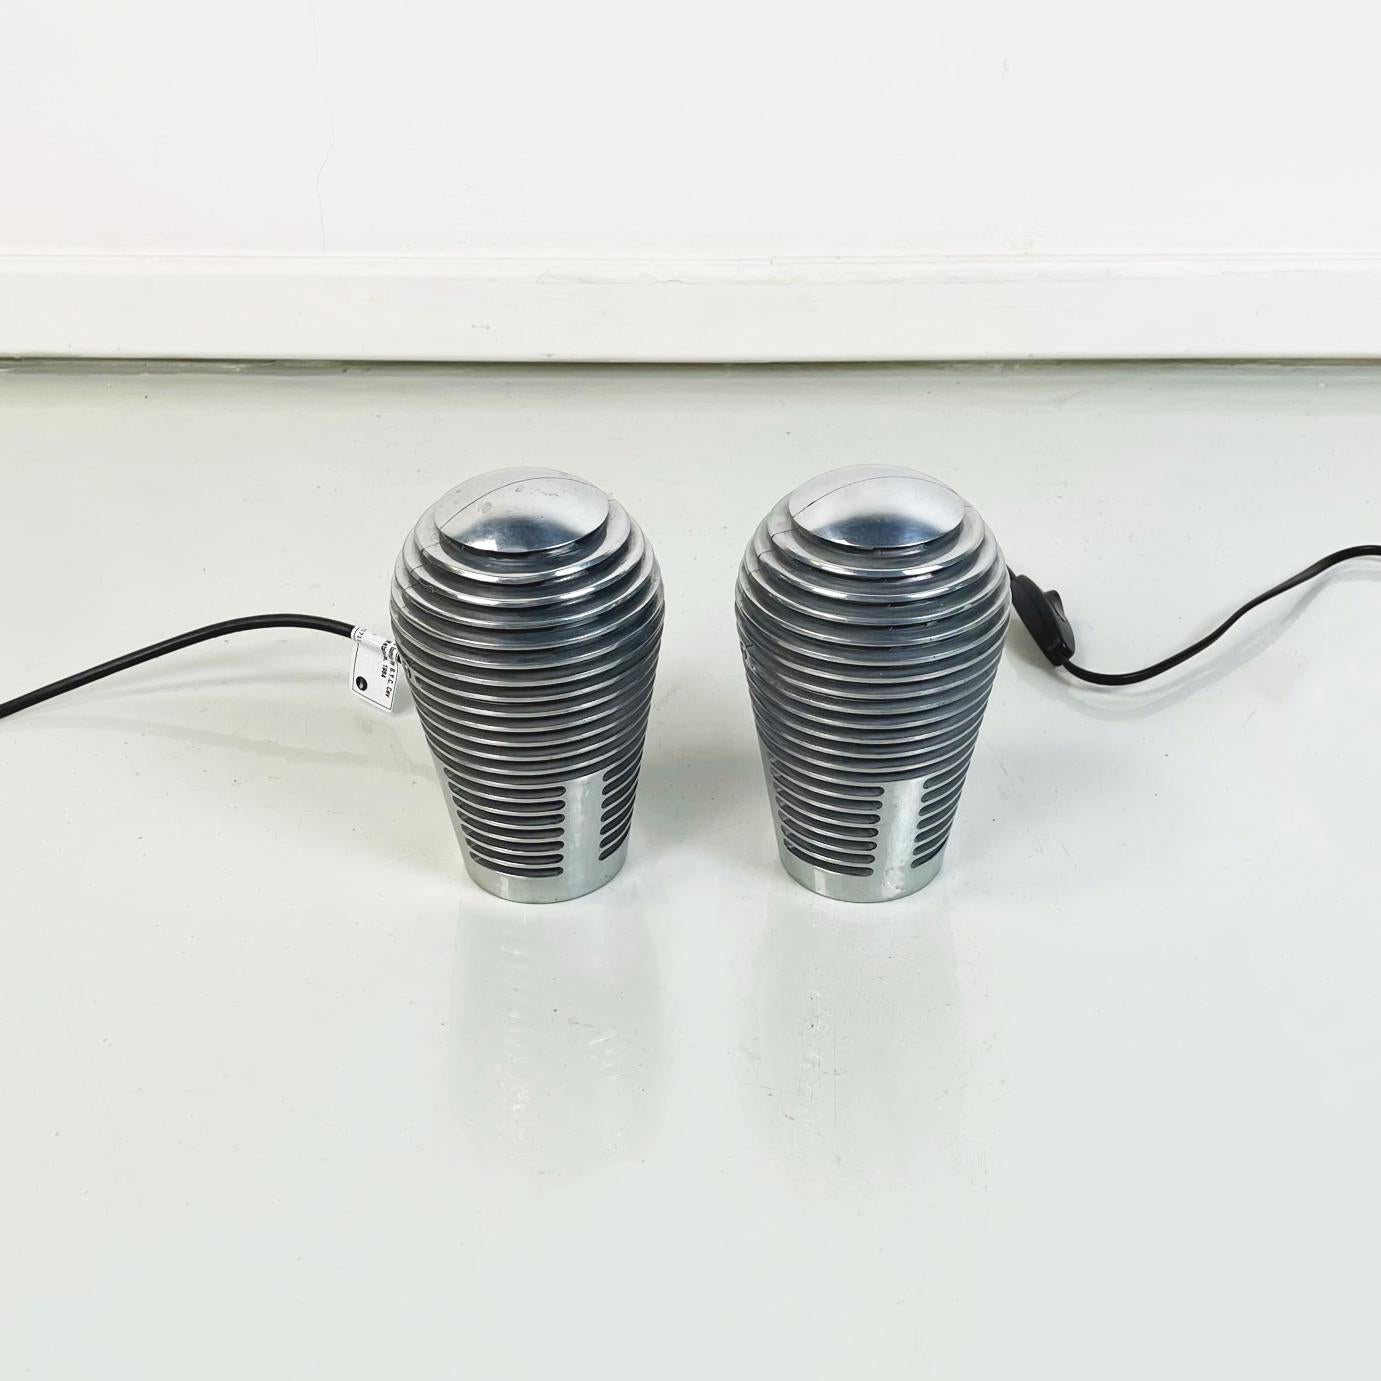 Spanisch moderne Metall Tischlampen mod. Zen  von S.Y.O. Devesa für Metalarte, 1984
Paar von Tischlampen mod. Zen mit einer unregelmäßigen Form und einem runden Sockel aus verchromtem Metall.
Produziert von Metalarte in den 1980er Jahren und